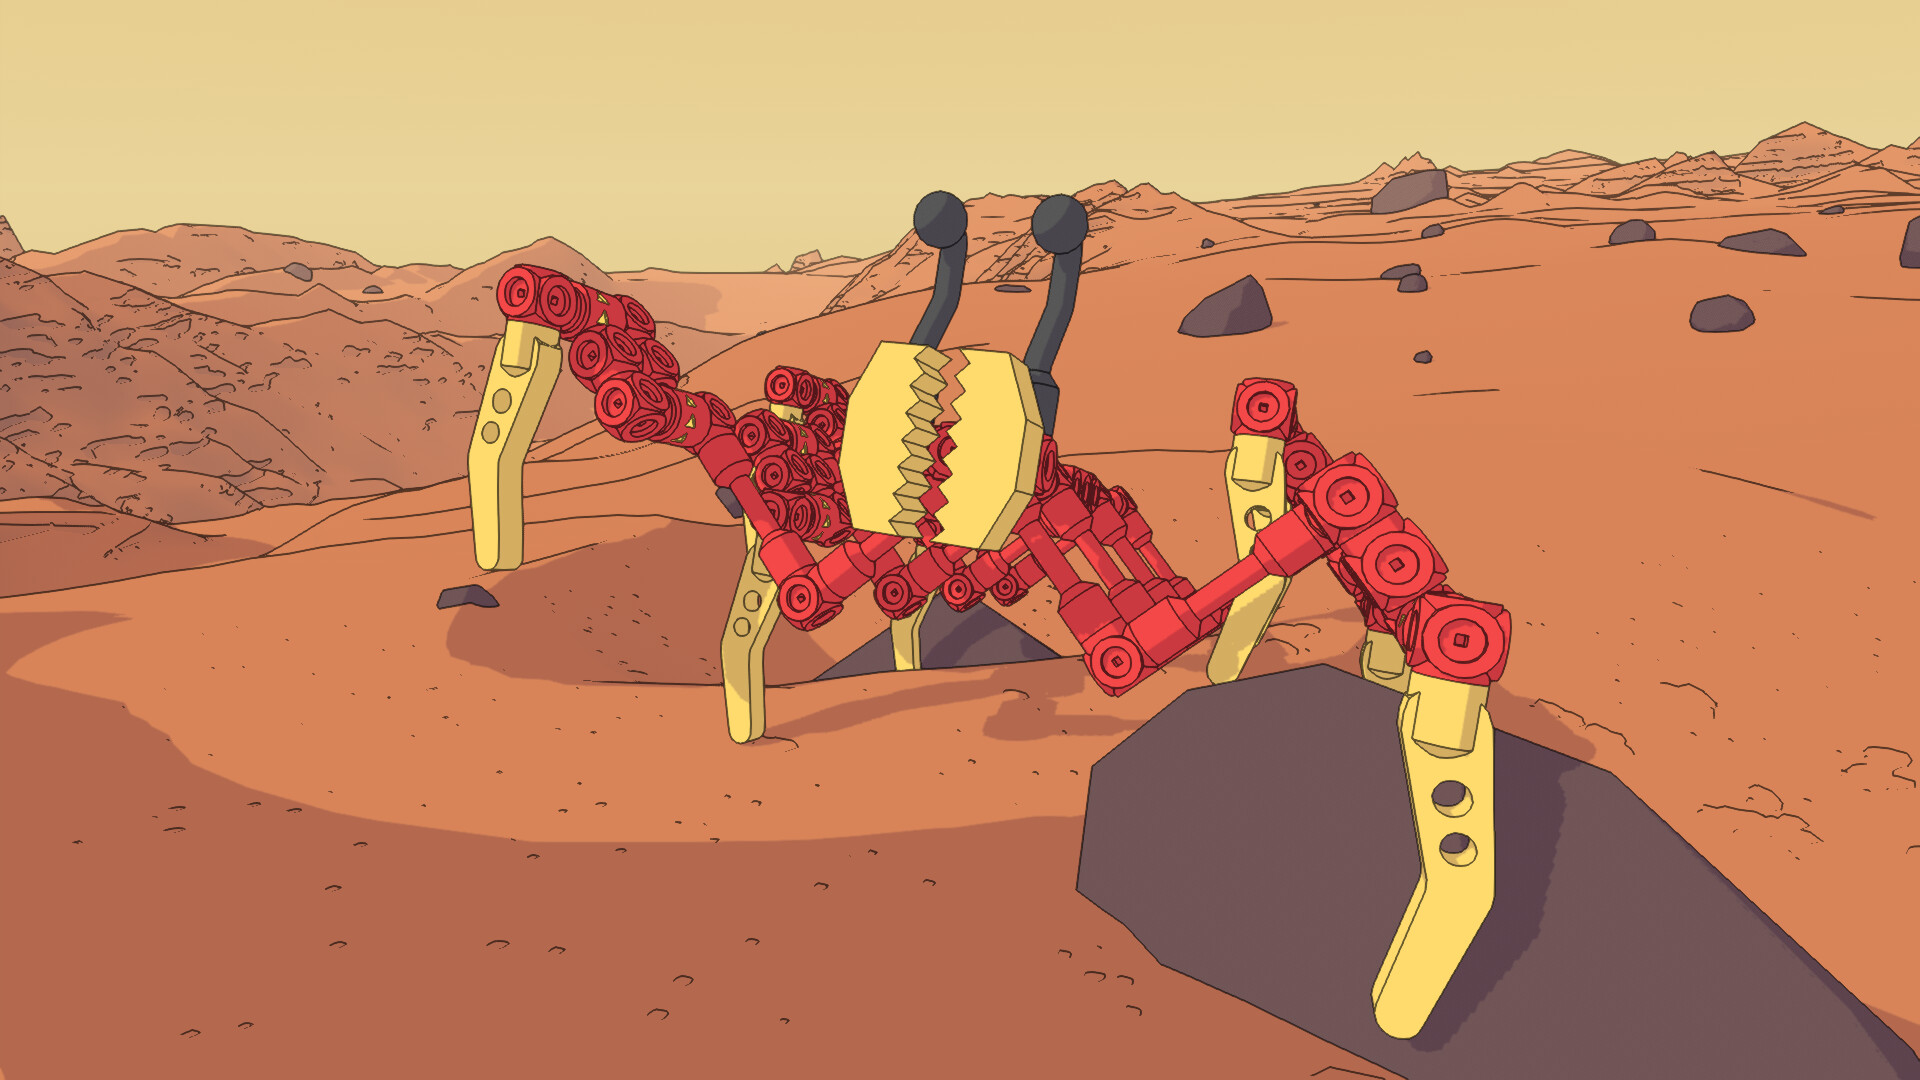 《火星第一物流》公布 开放世界物理模拟游戏